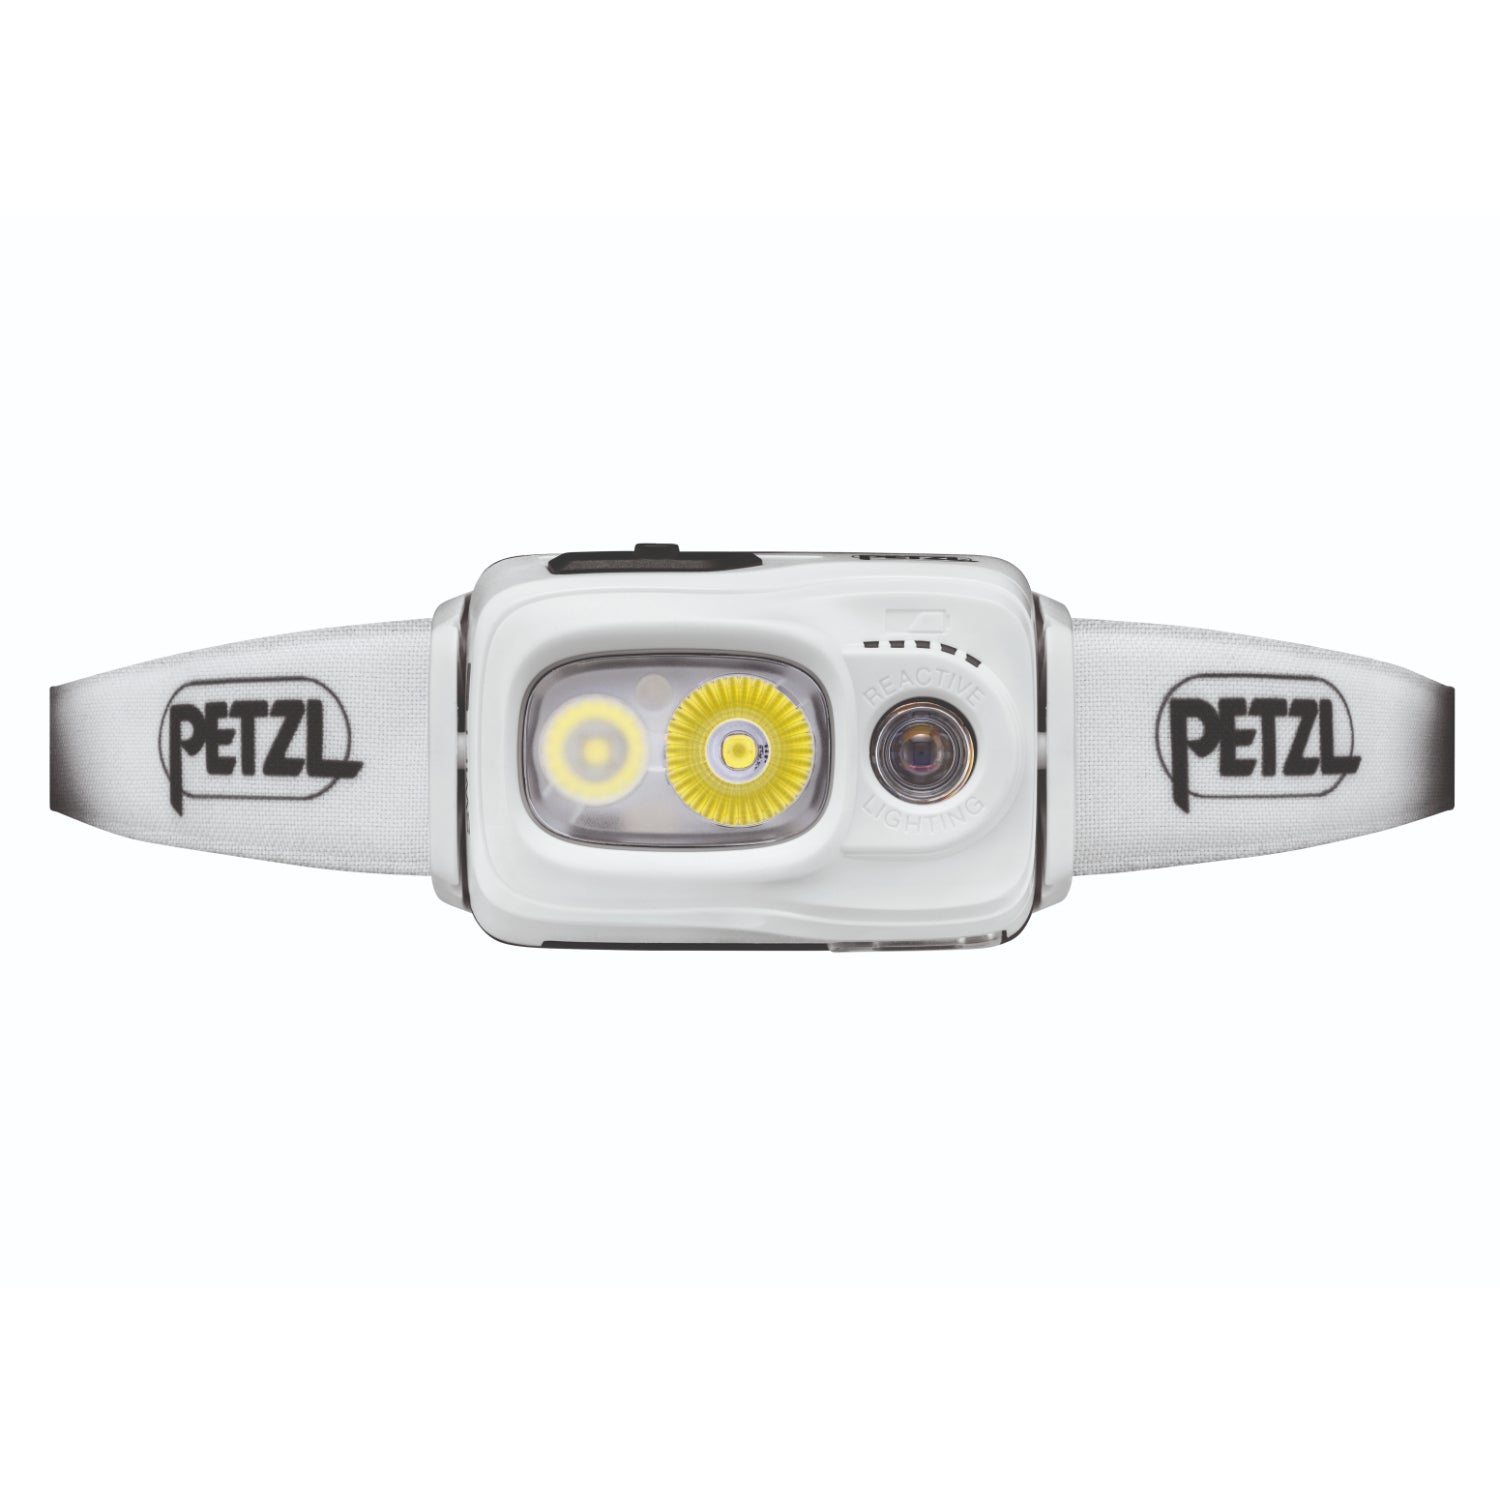 Petzl SWIFT RL, E095BB02 head torch, white, 1100 lumens